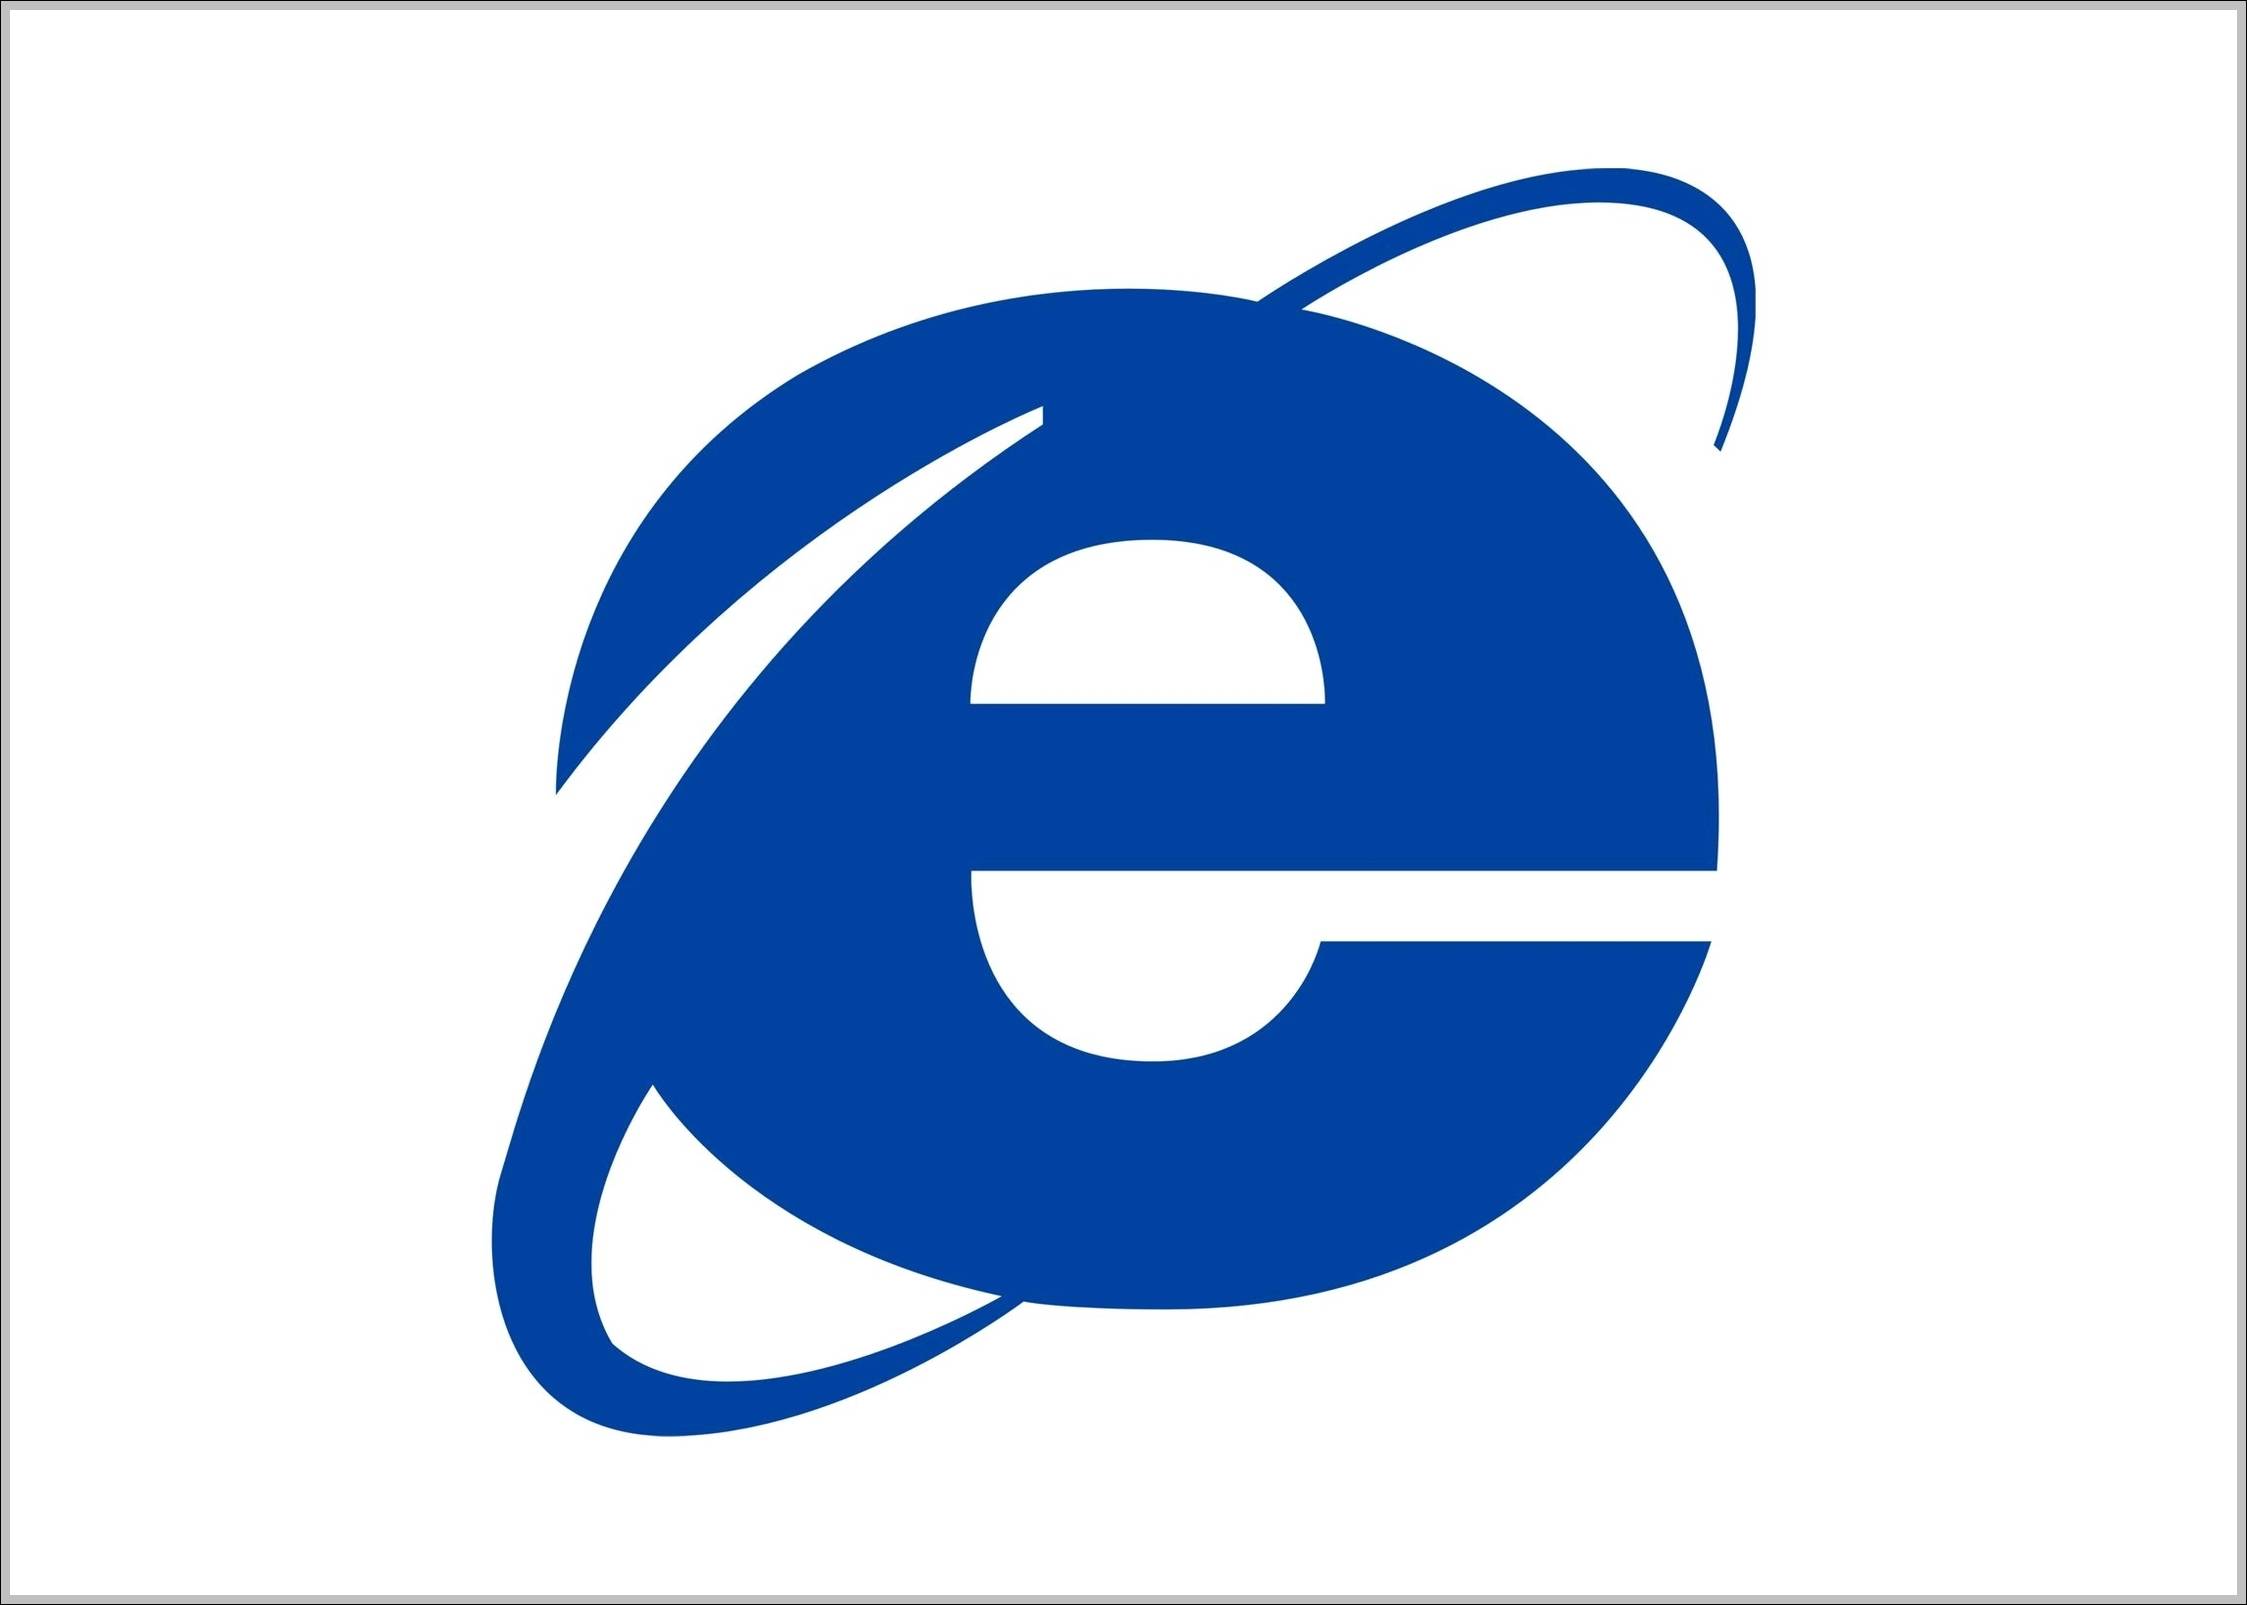 Old Internet Logo - Internet Explorer logo old. Logo Sign, Signs, Symbols